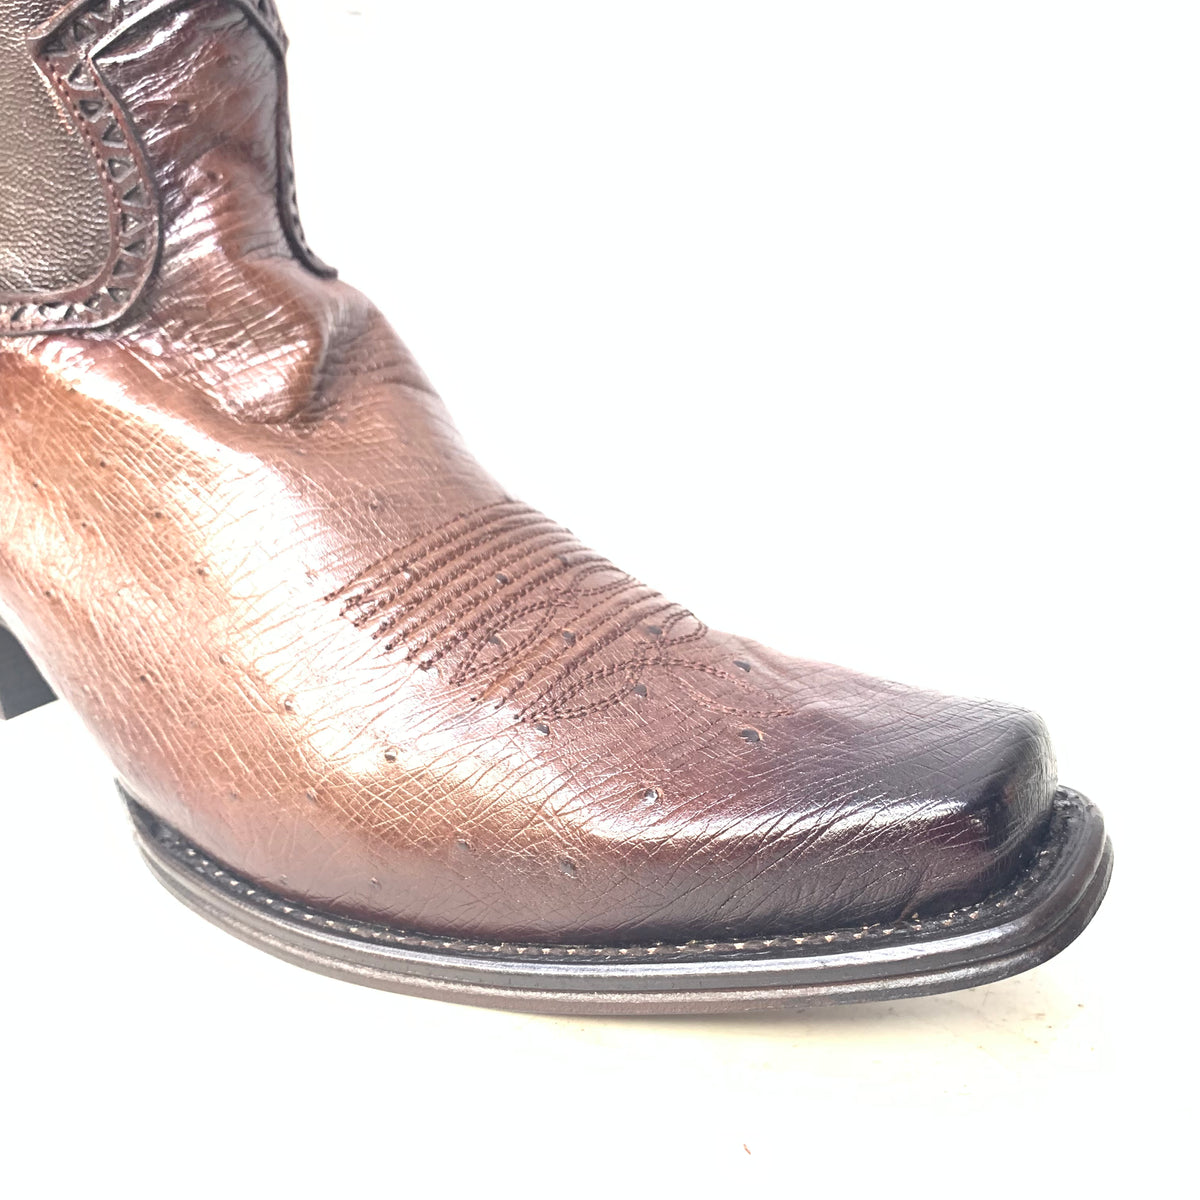 Los Altos Boots Brown Ostrich Quill Cowboy Boots - Dudes Boutique